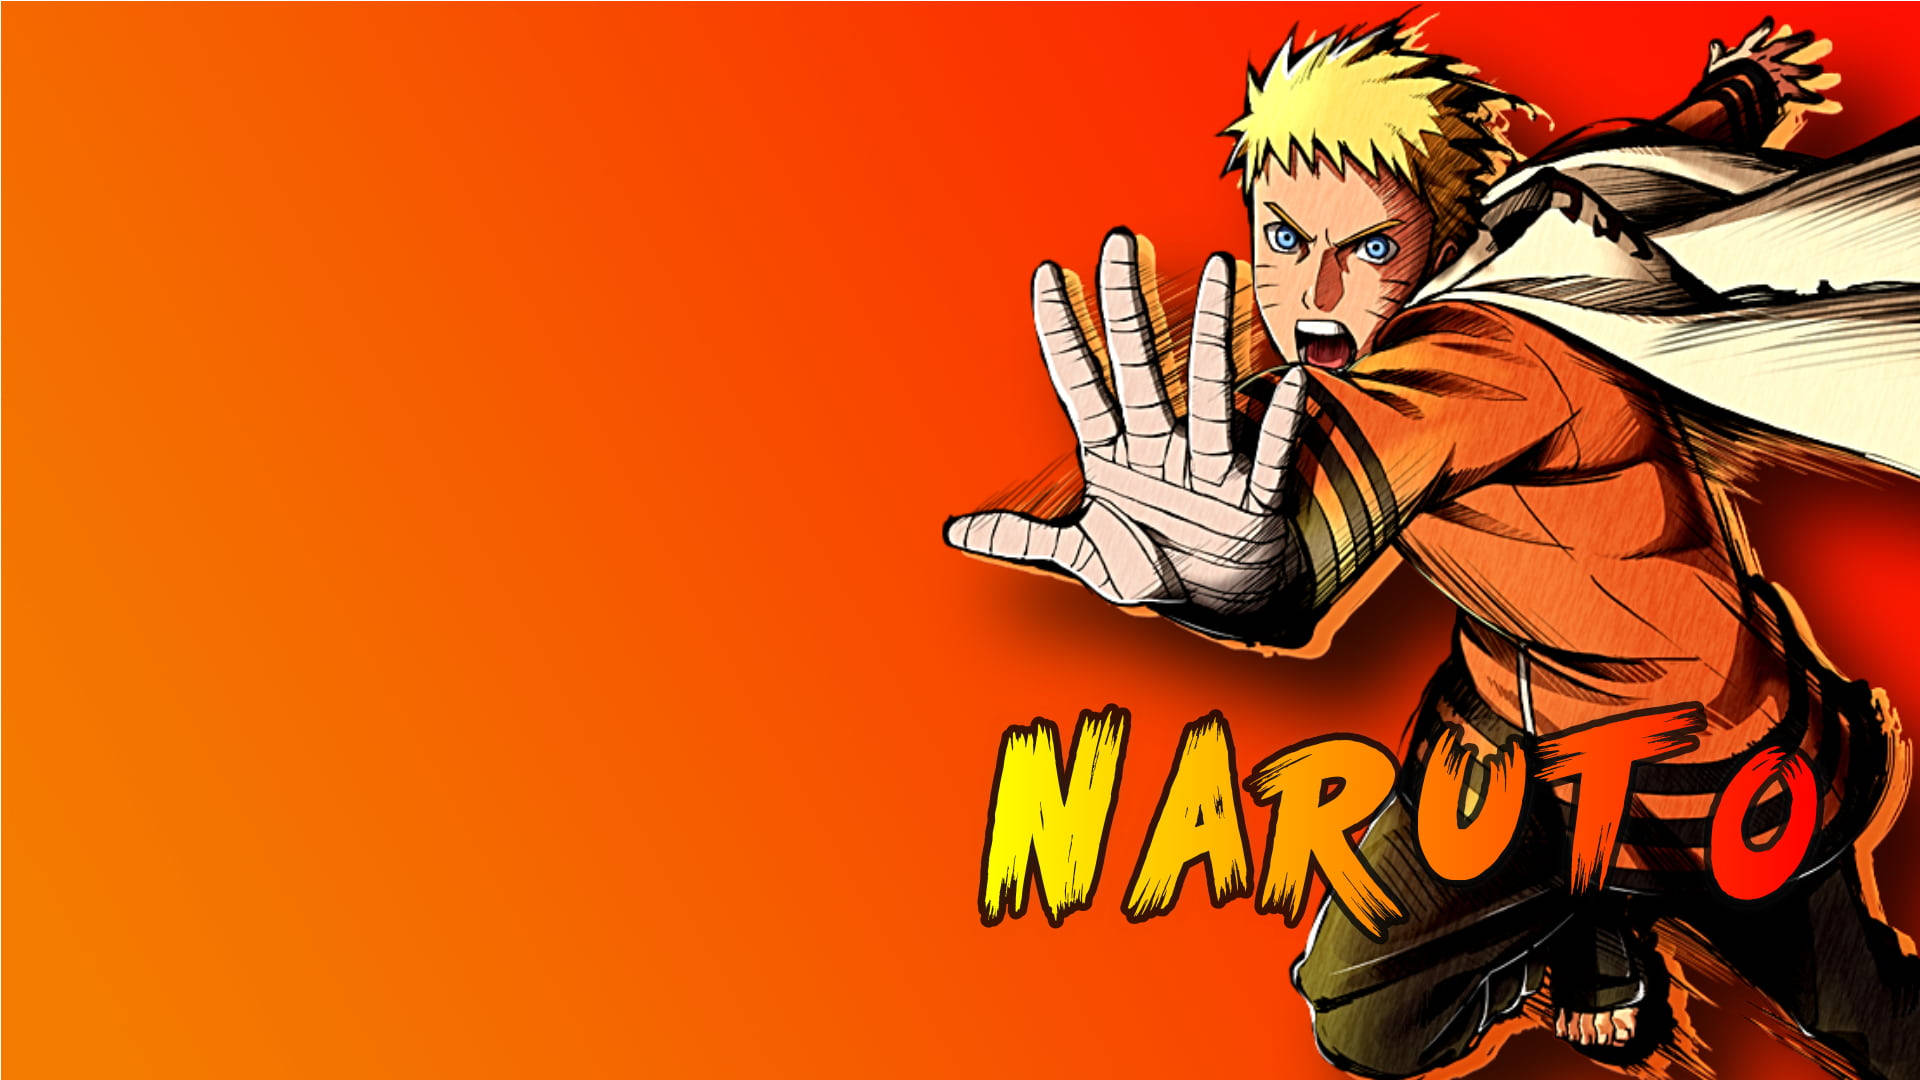 Moving Naruto Technique Wallpaper